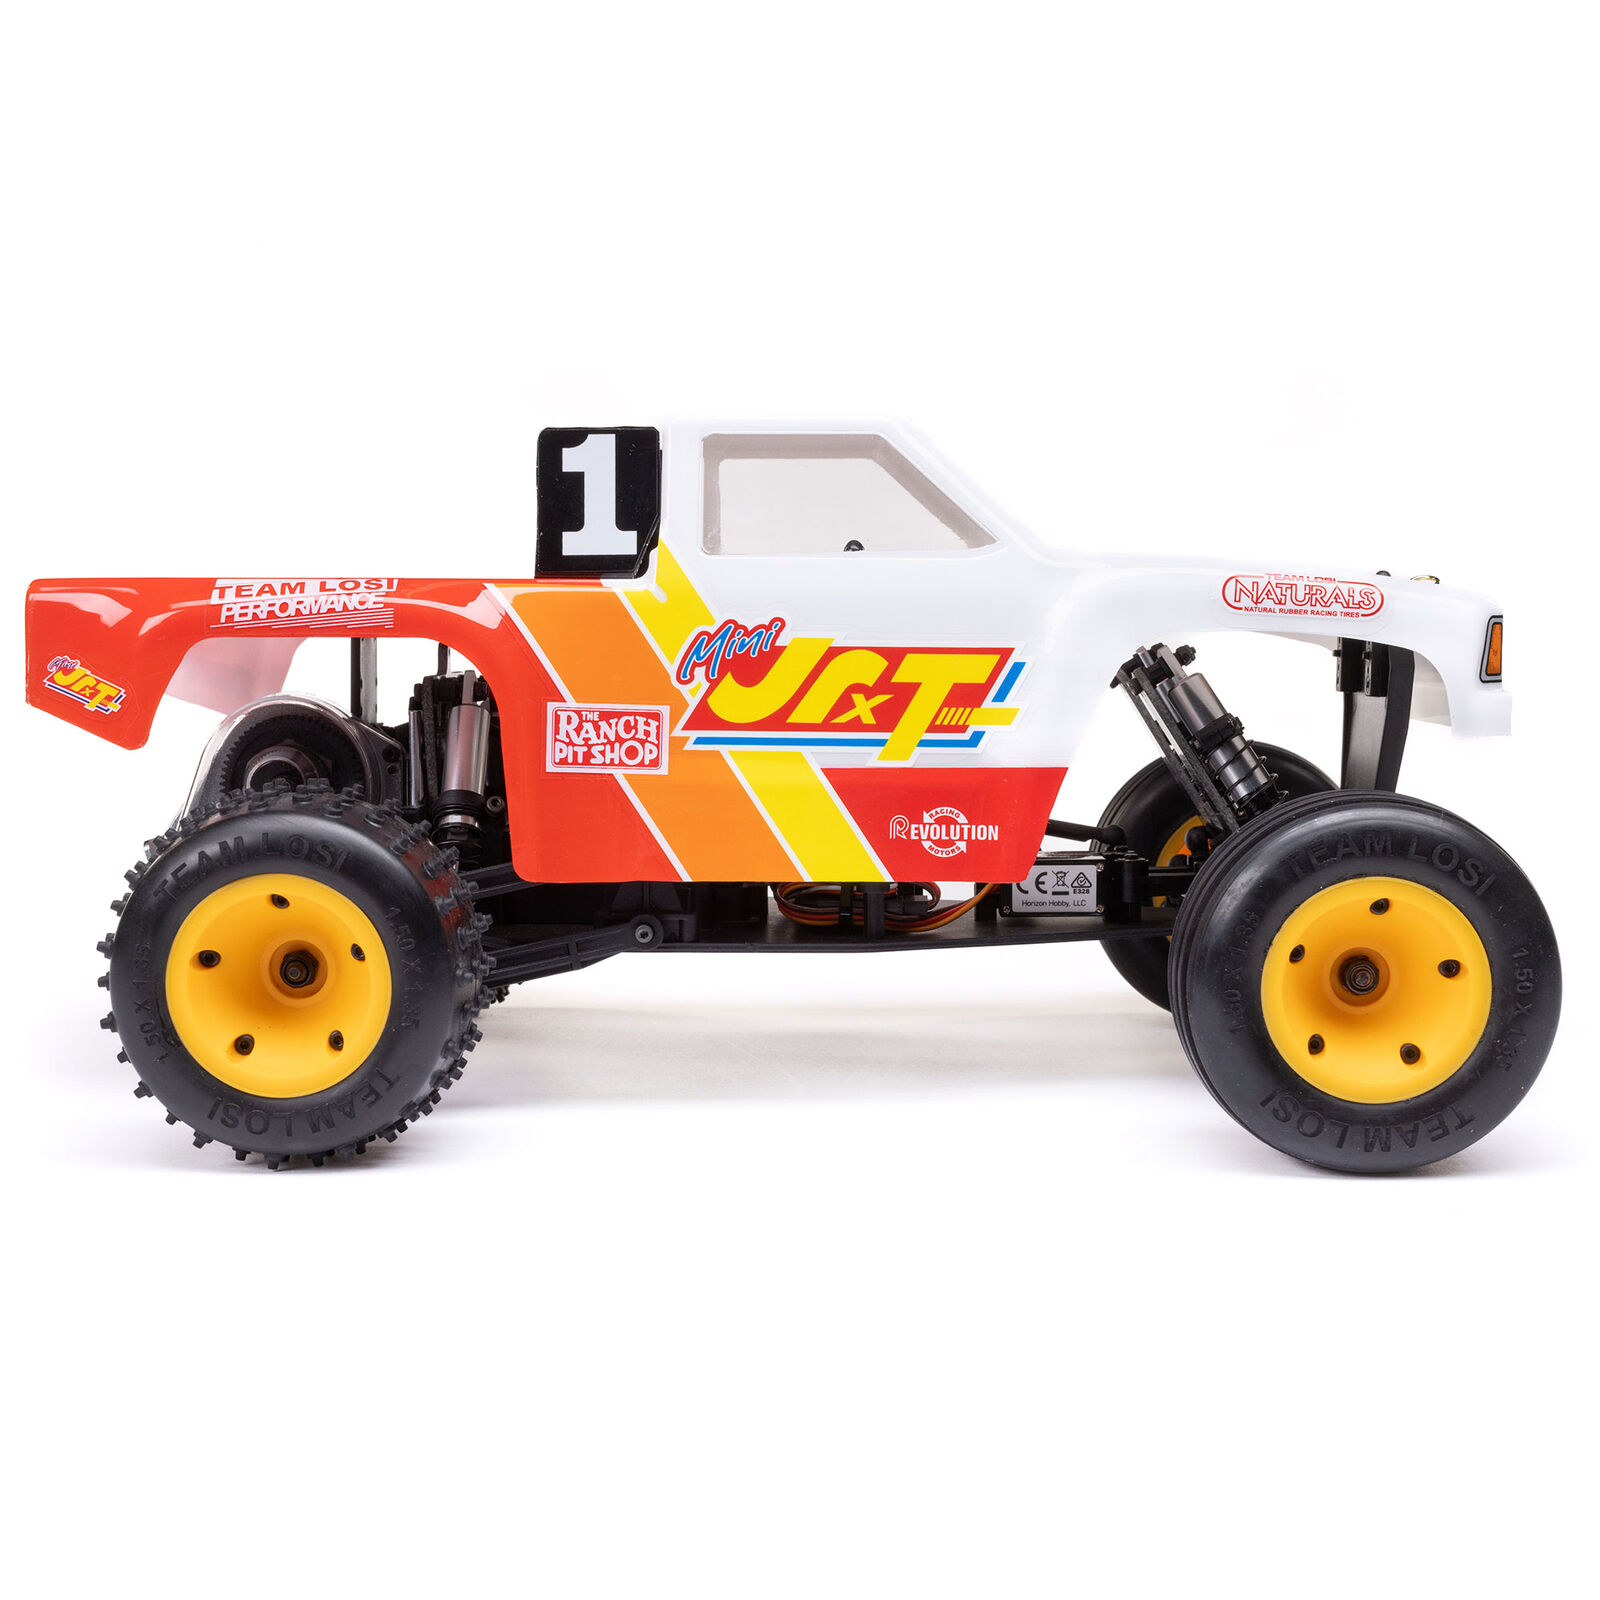 Losi Mini JRXT Limited Edition RTR Race Truck